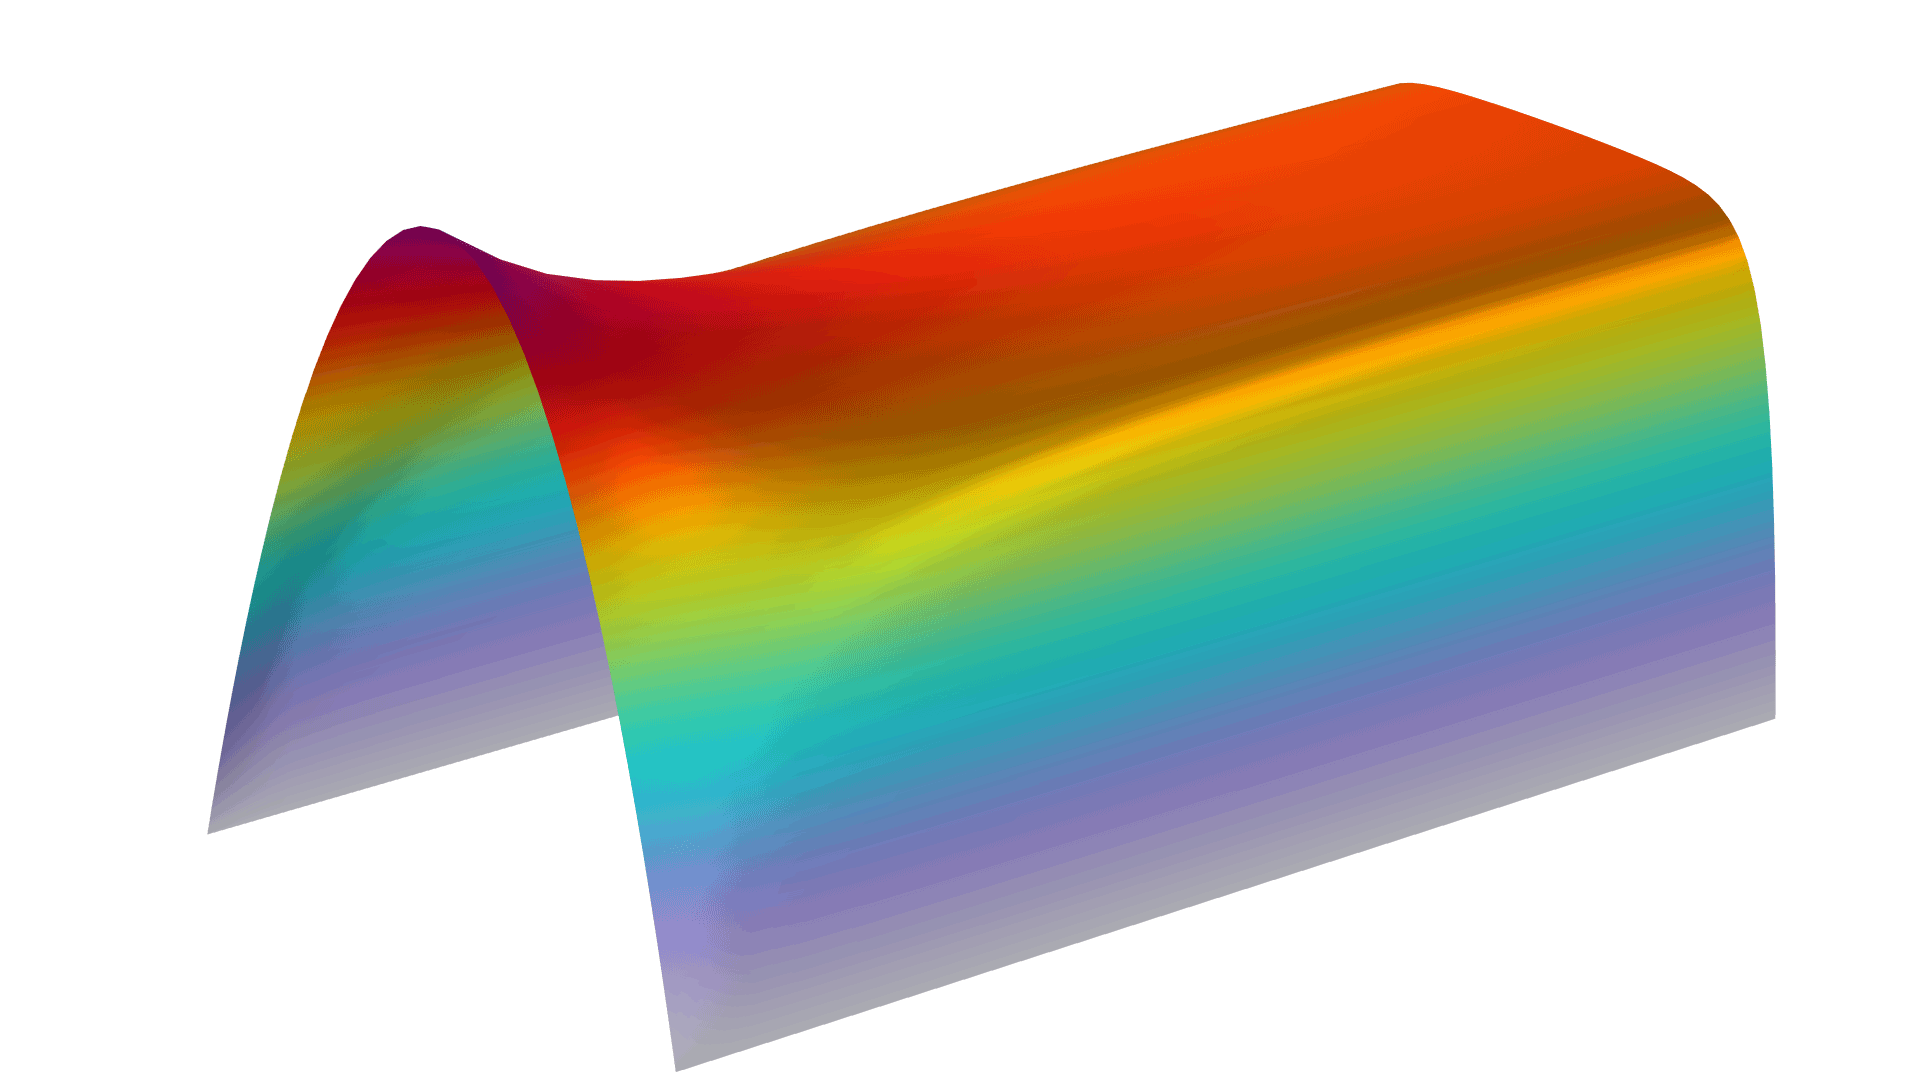 磁流体动力学模型，其中以 Prism 颜色表显示磁场。